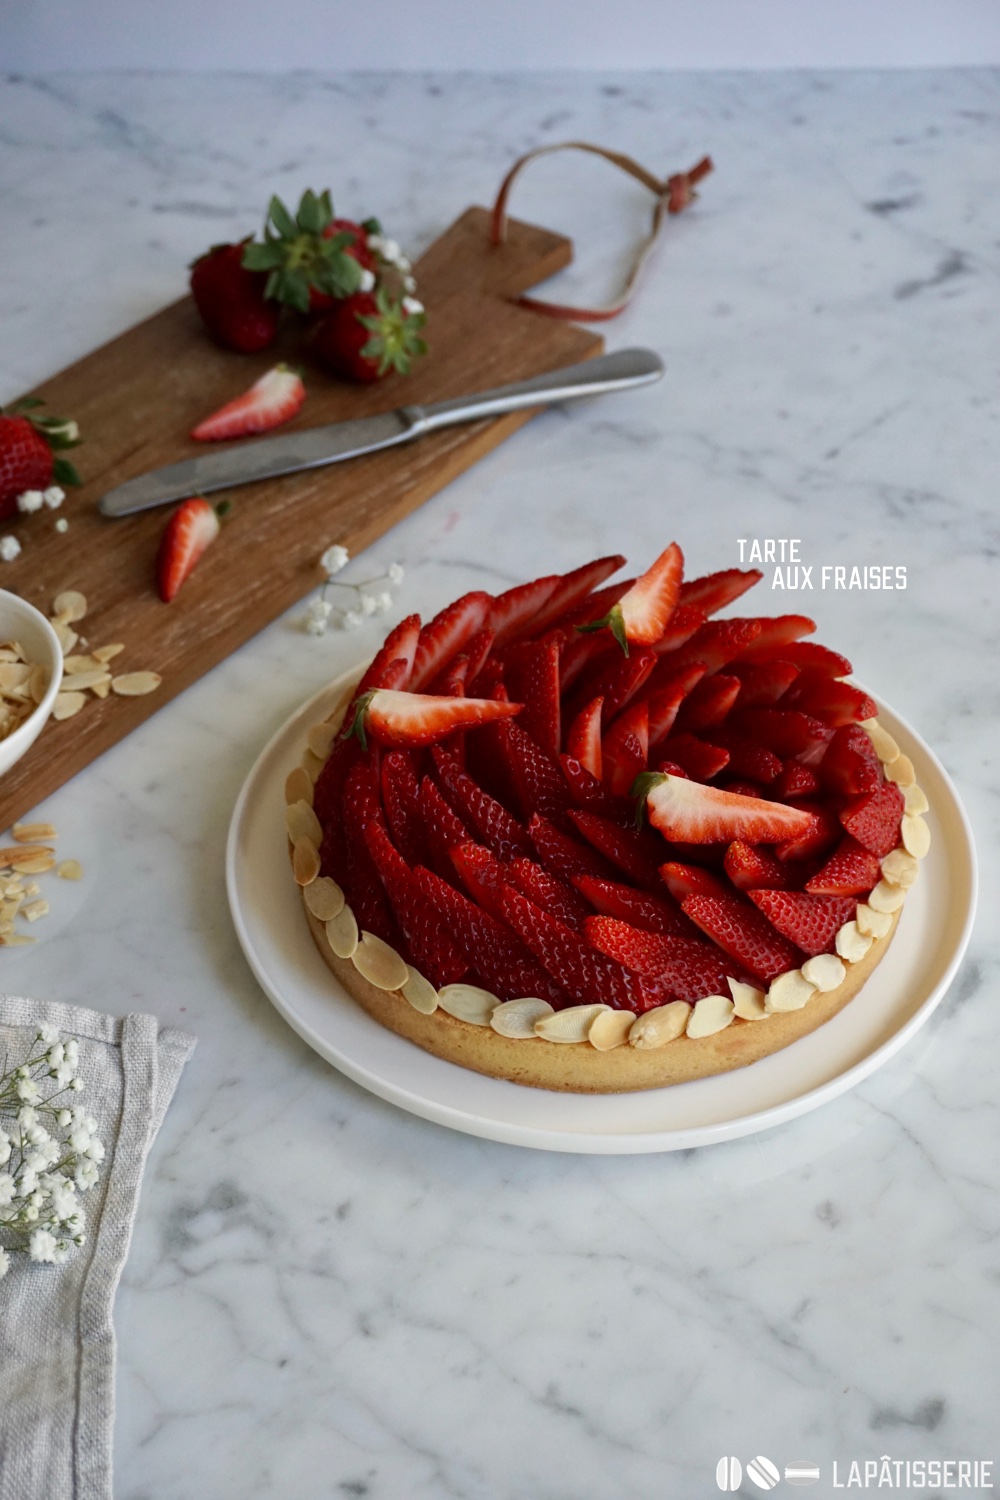 Die Erdbeersaison kann losgehen mit einer klassischen Tarte aux fraises. Einfach lecker.